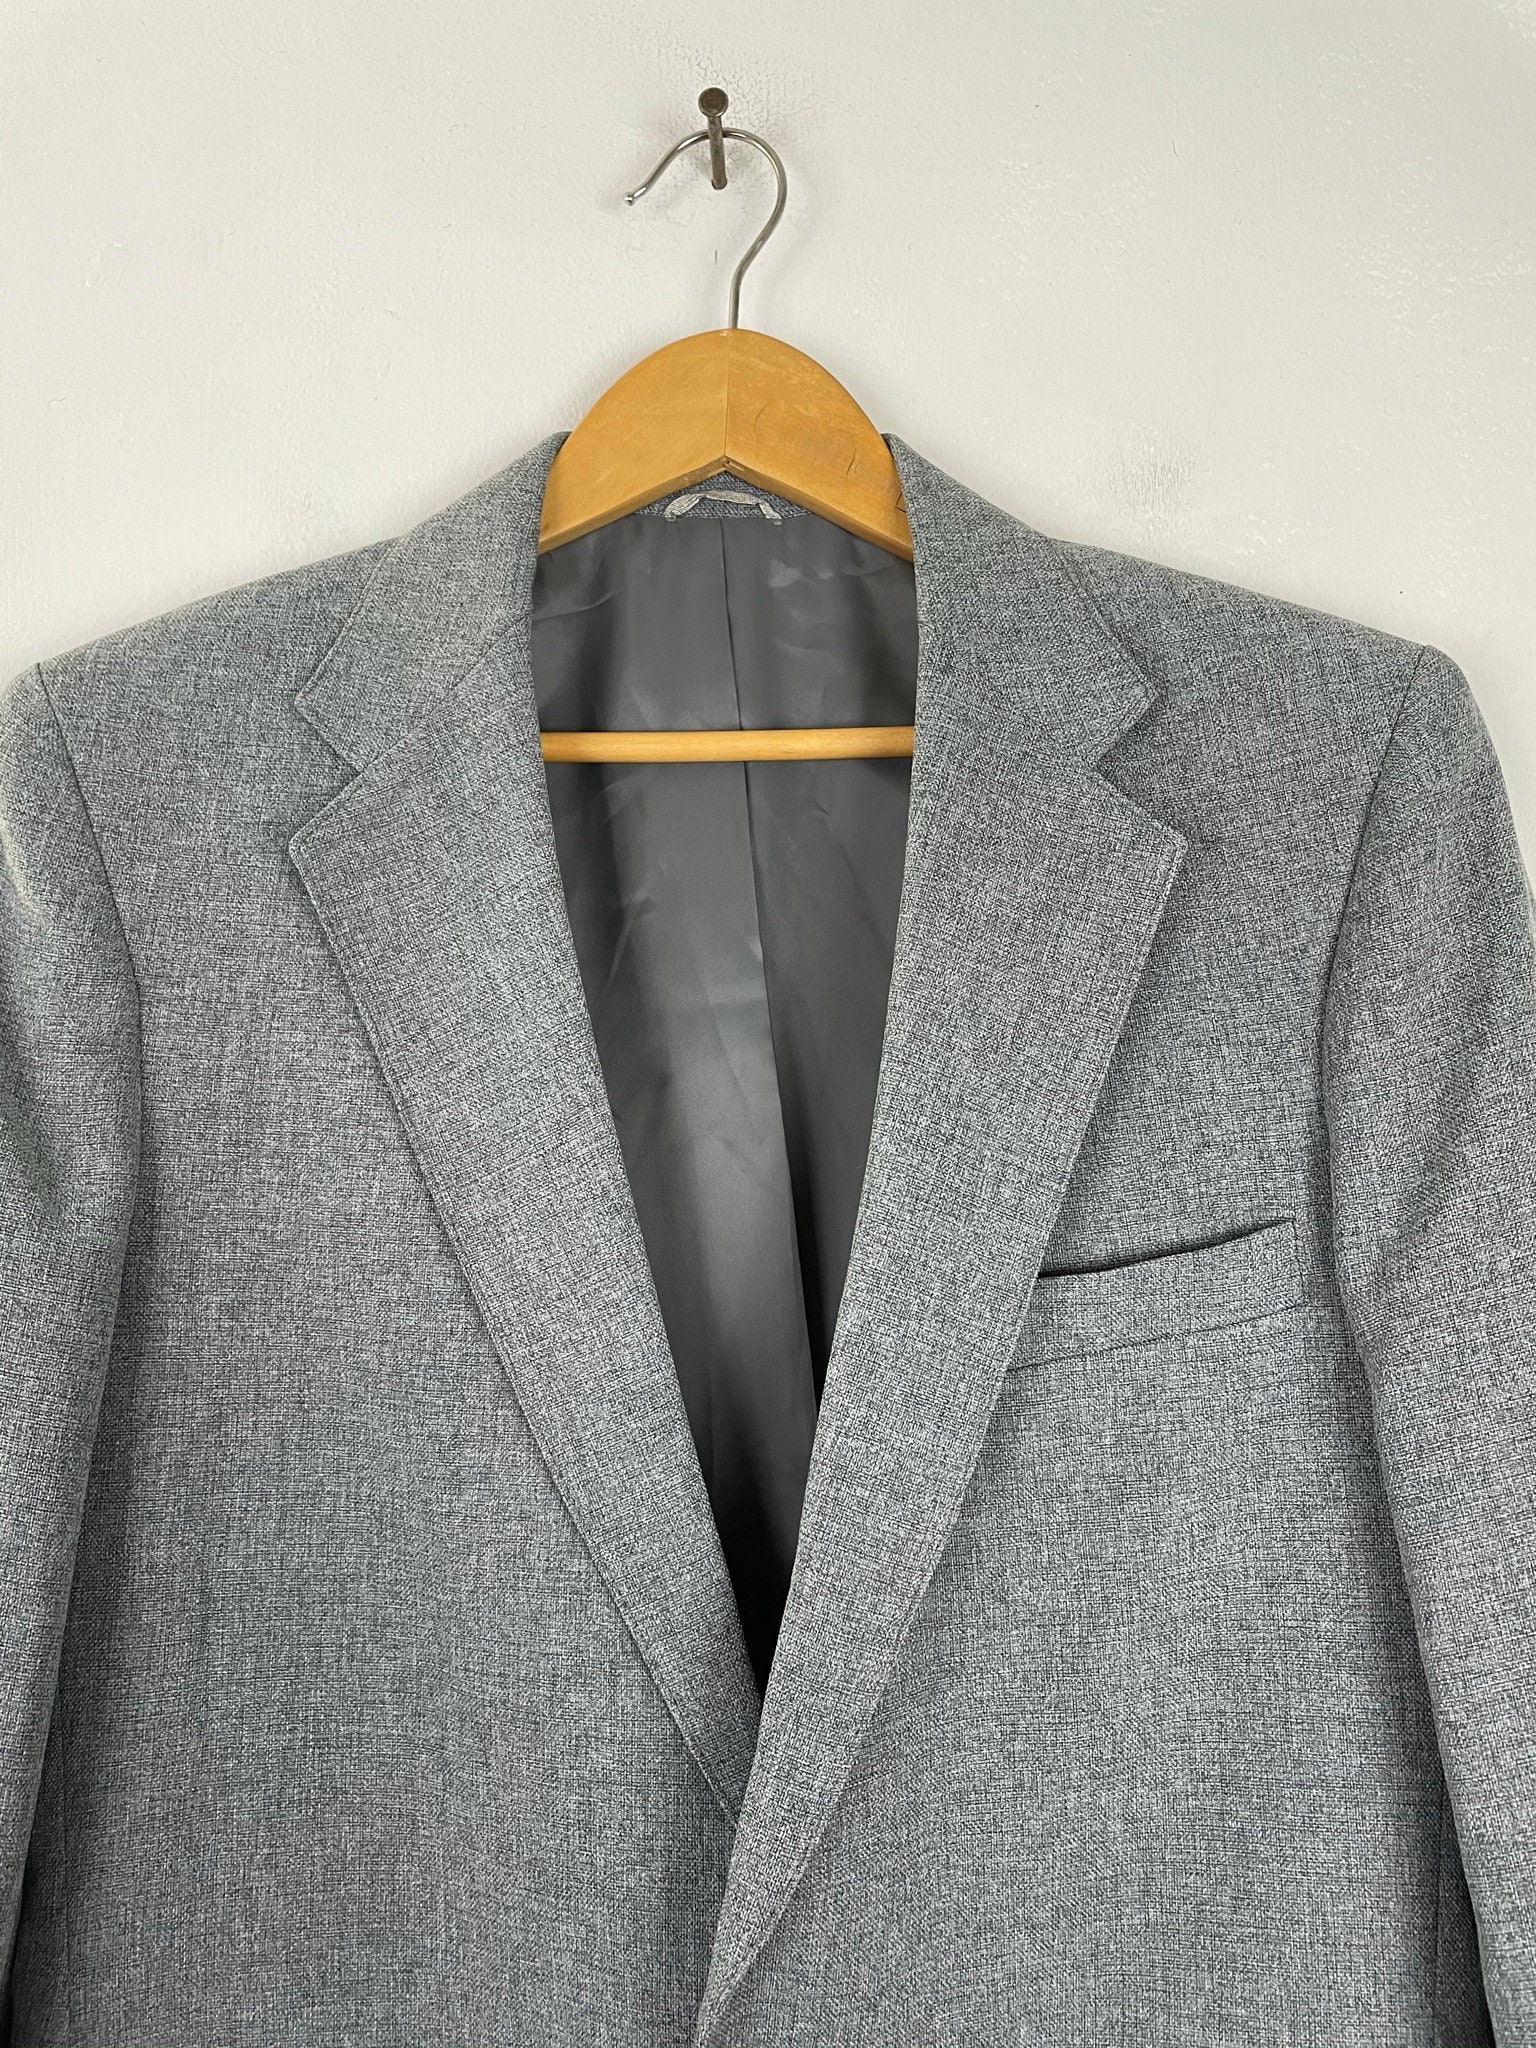 Vintage Levis Action Suit Gray Sport Coat Mens Size 38L, 80s Levi ...